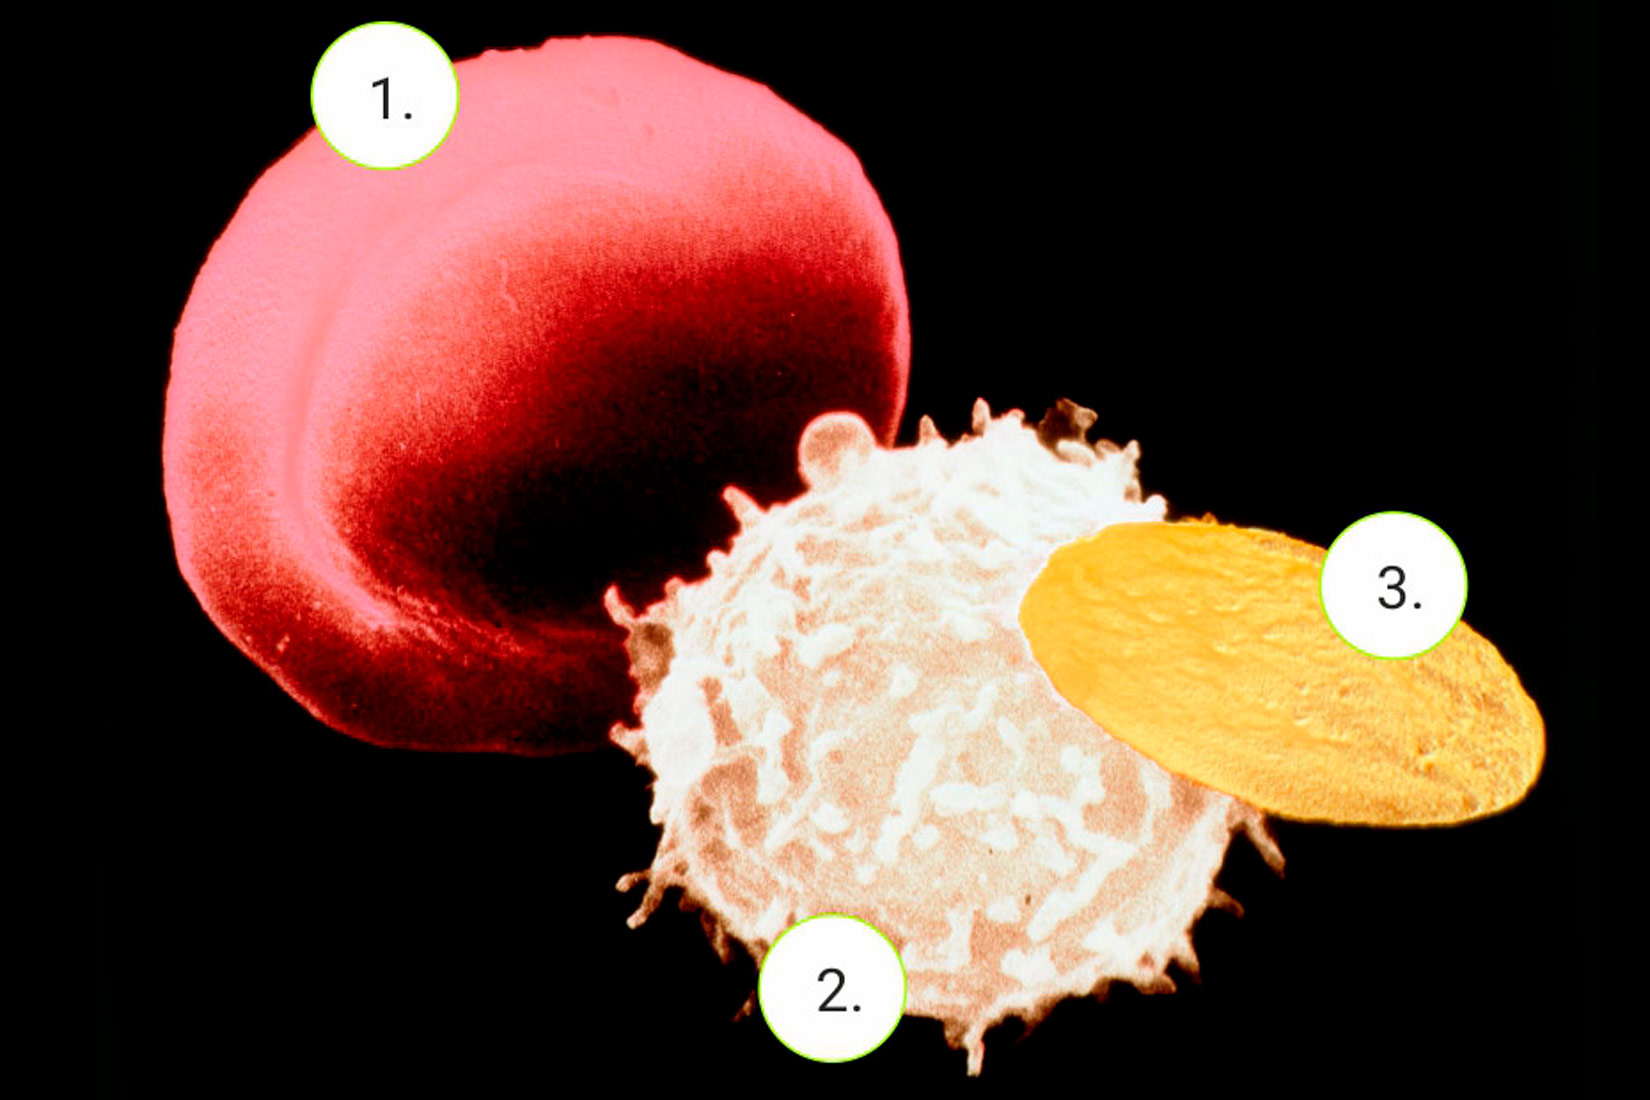 Na slici su prikazane tri različite krvne stanice. Pod brojem 1 nalazi se okrugla krvna stanica crvene boje. Pod brojem 2 se nalazi okrugla stanica bijele boje, nešto manja od crvene, koja po sebi ima male izdanke. Pod brojem 3 se nalazi žuta eliptična stanica, manja od ostalih.